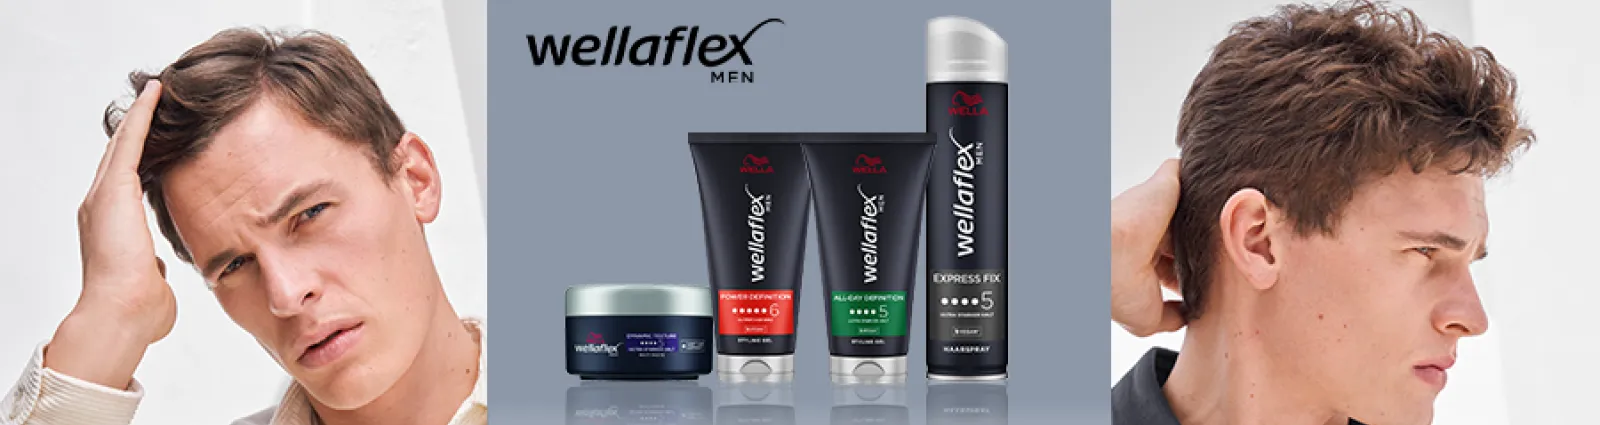 Wellaflex MEN